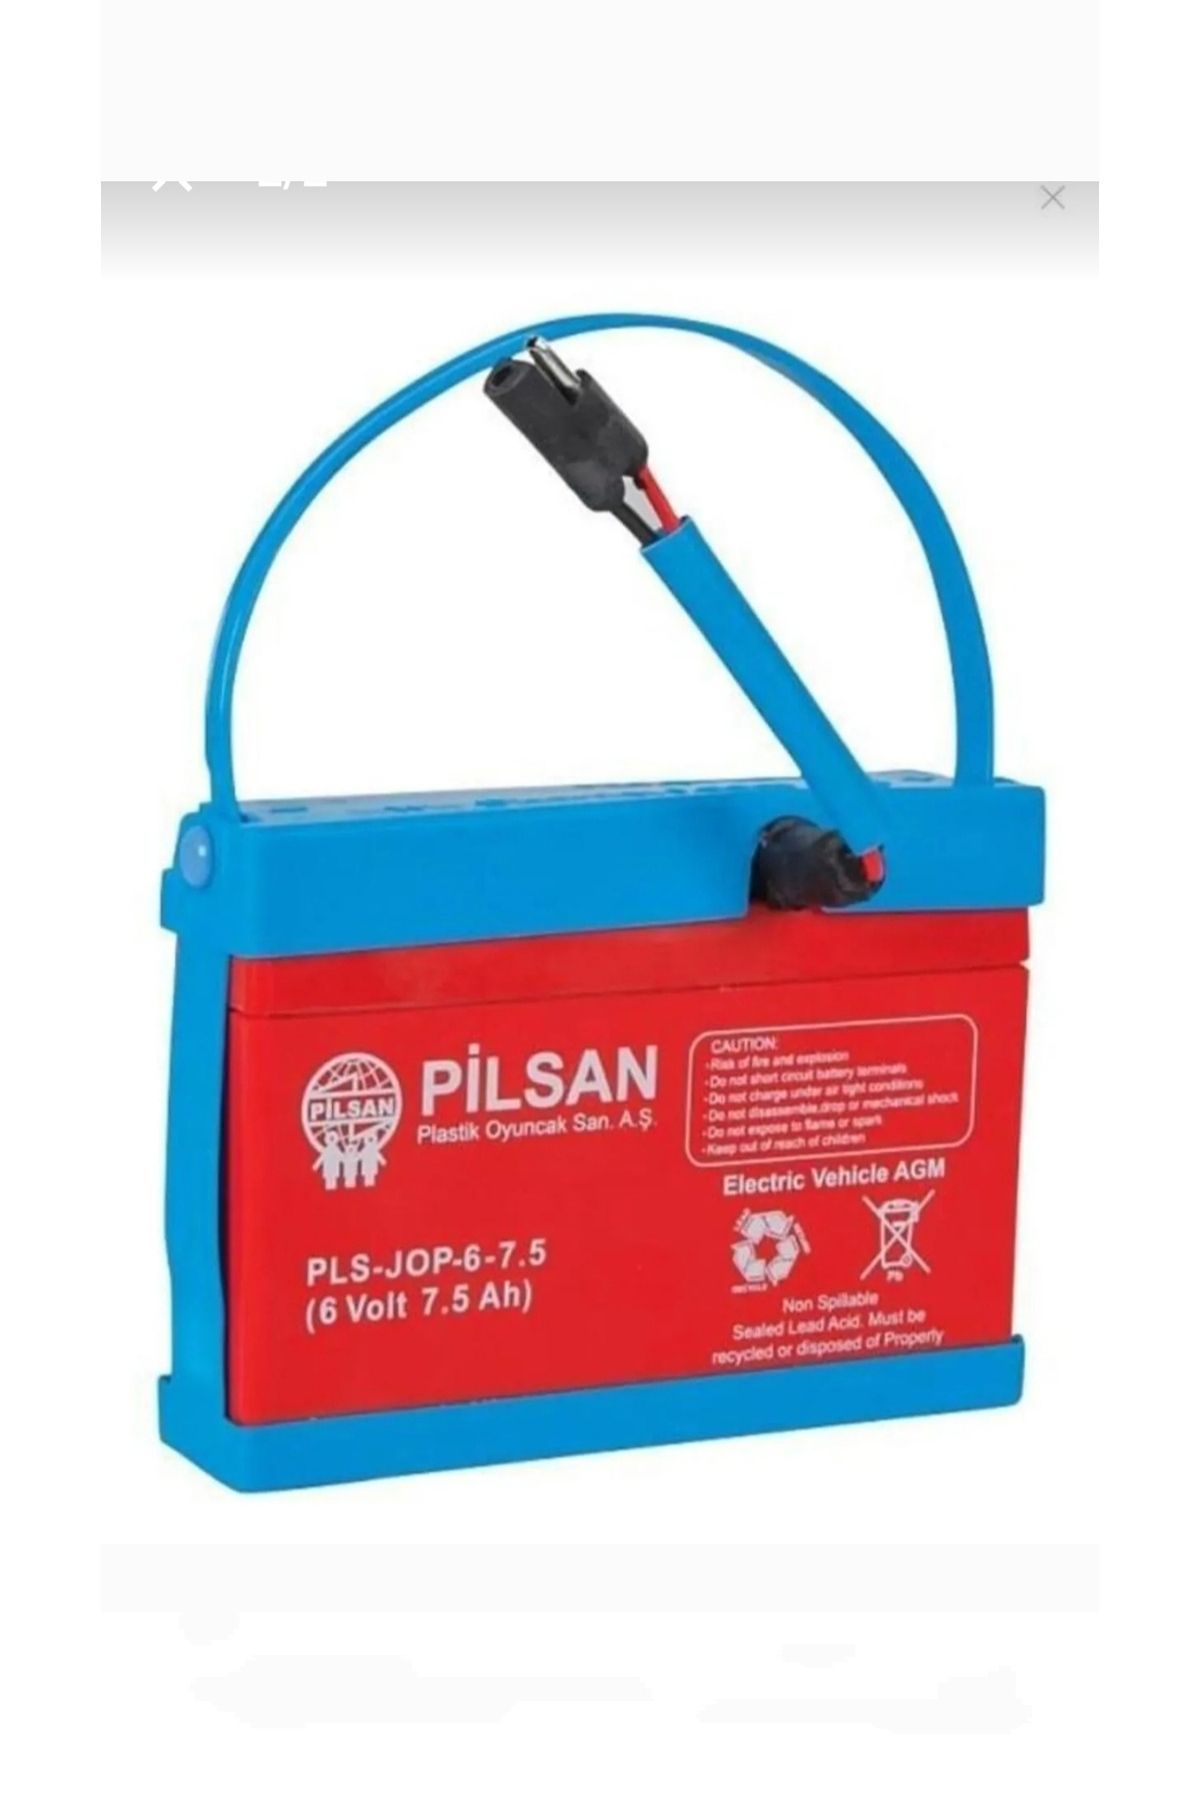 PİLSAN Pilsan 6 Volt Akü 7.5 Ah Amper Kısa Kablolu Soketli Üstün Performans Akü /batarya